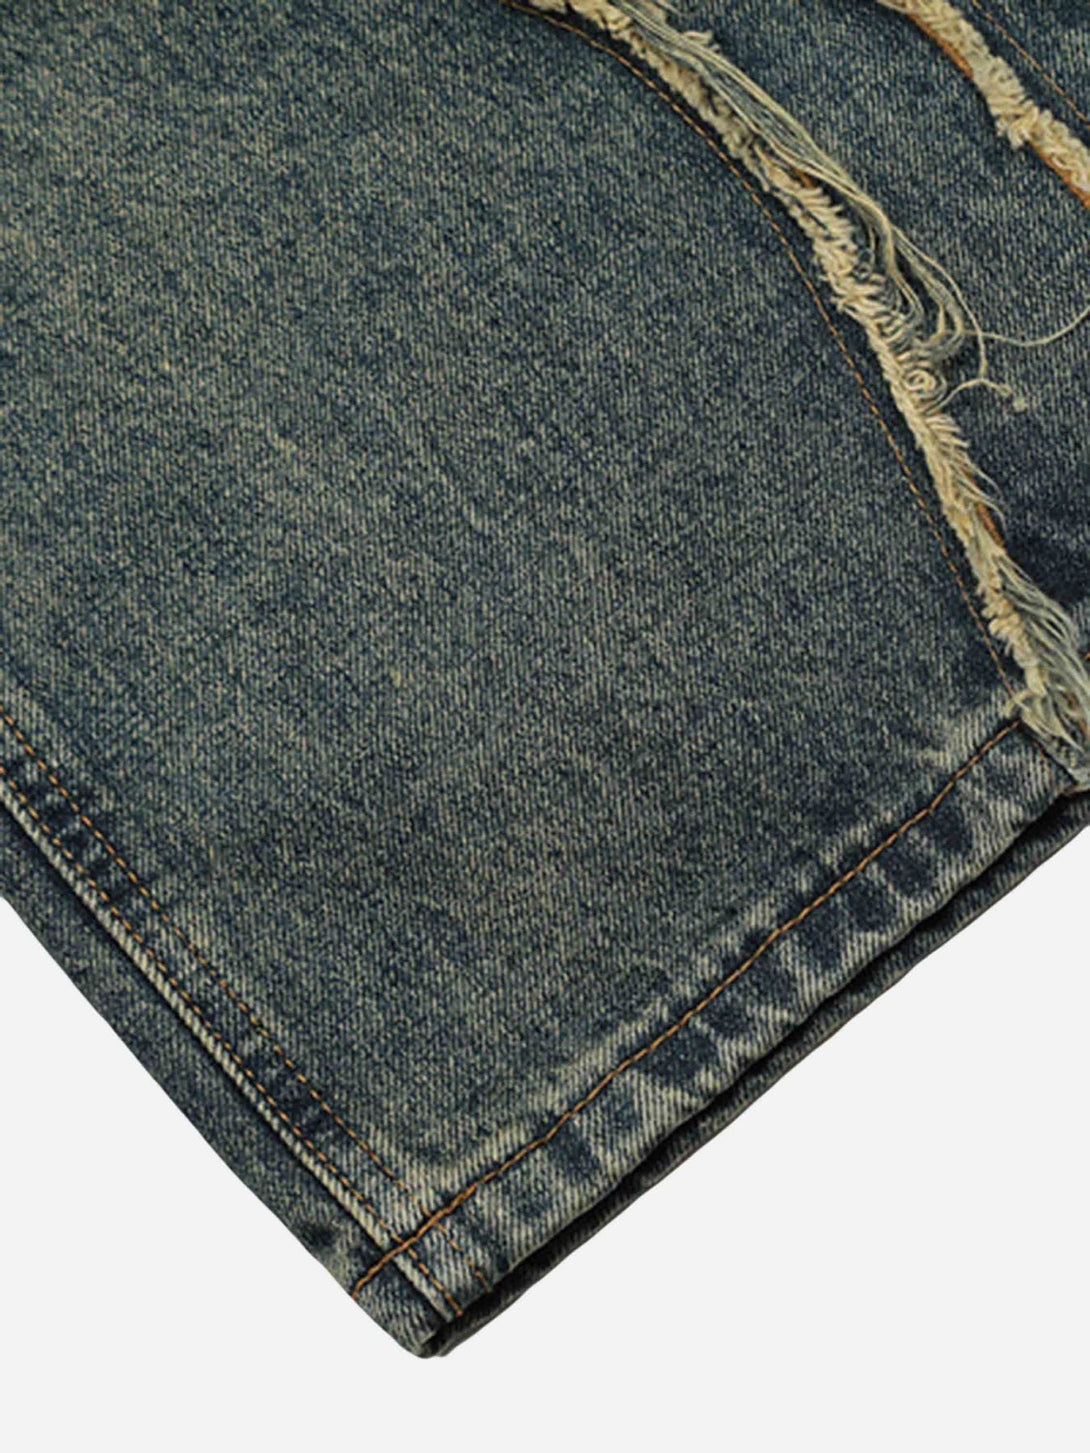 Majesda® - Vintage Baggy Jeans- Outfit Ideas - Streetwear Fashion - majesda.com